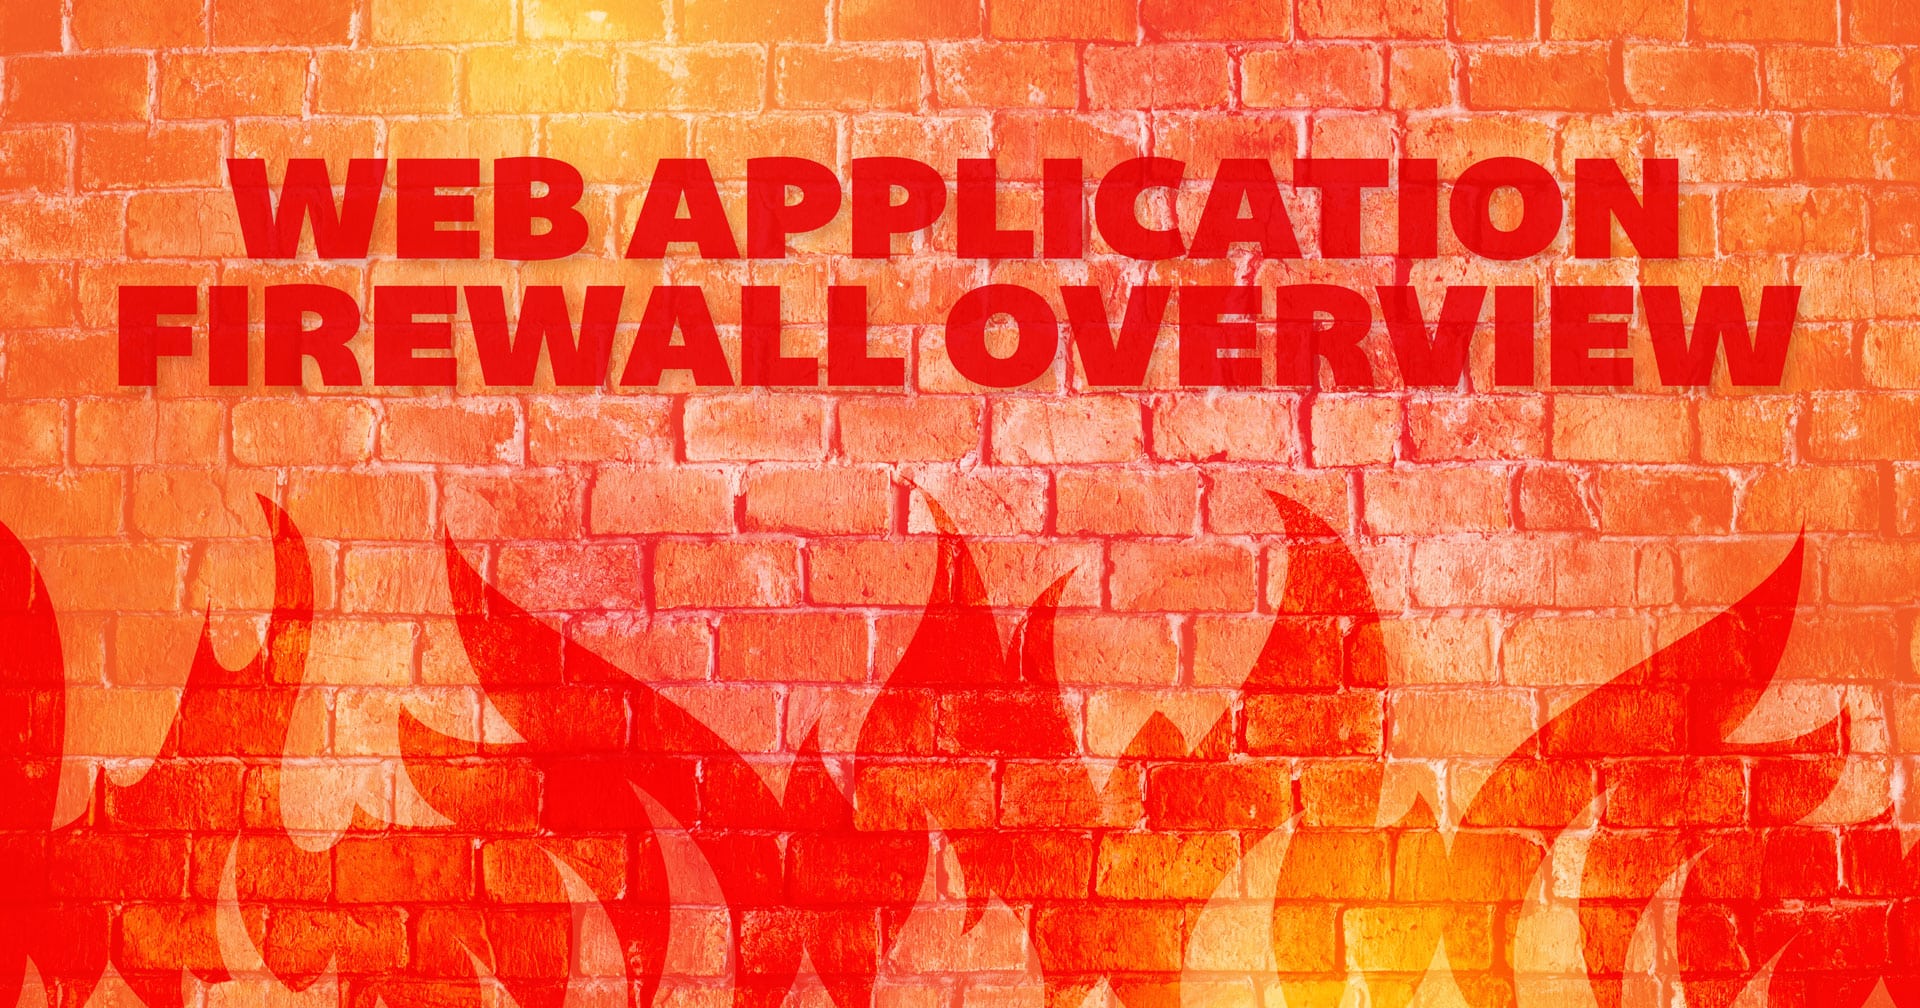 Web Application Firewall Overview Header